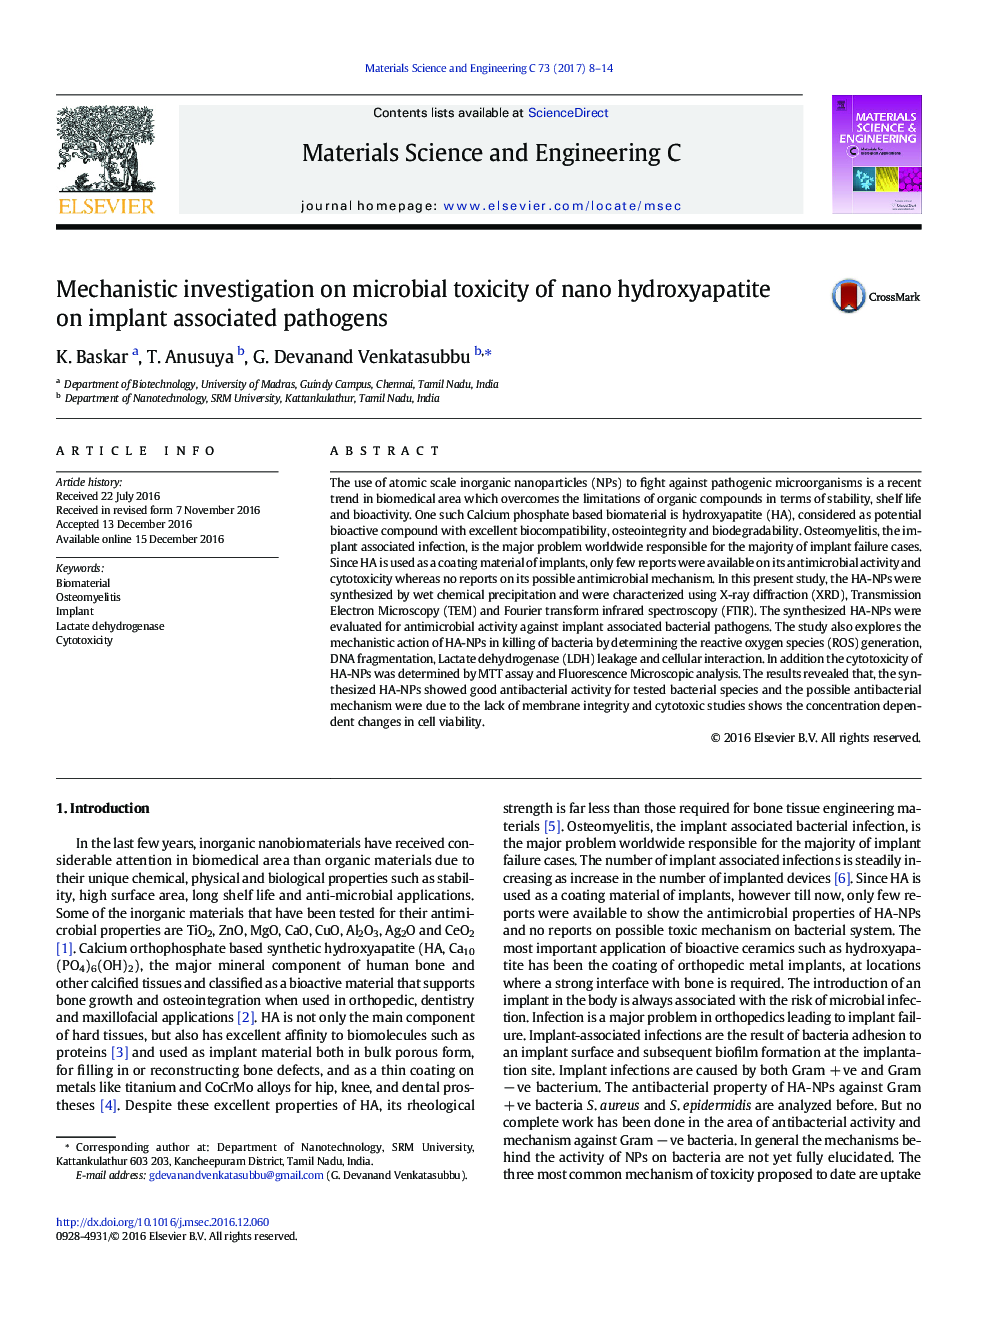 بررسی مکانیسم بر سمیت میکروبی نانو هیدروکسی آپاتیت بر پاتوژن های مرتبط با ایمپلنت 